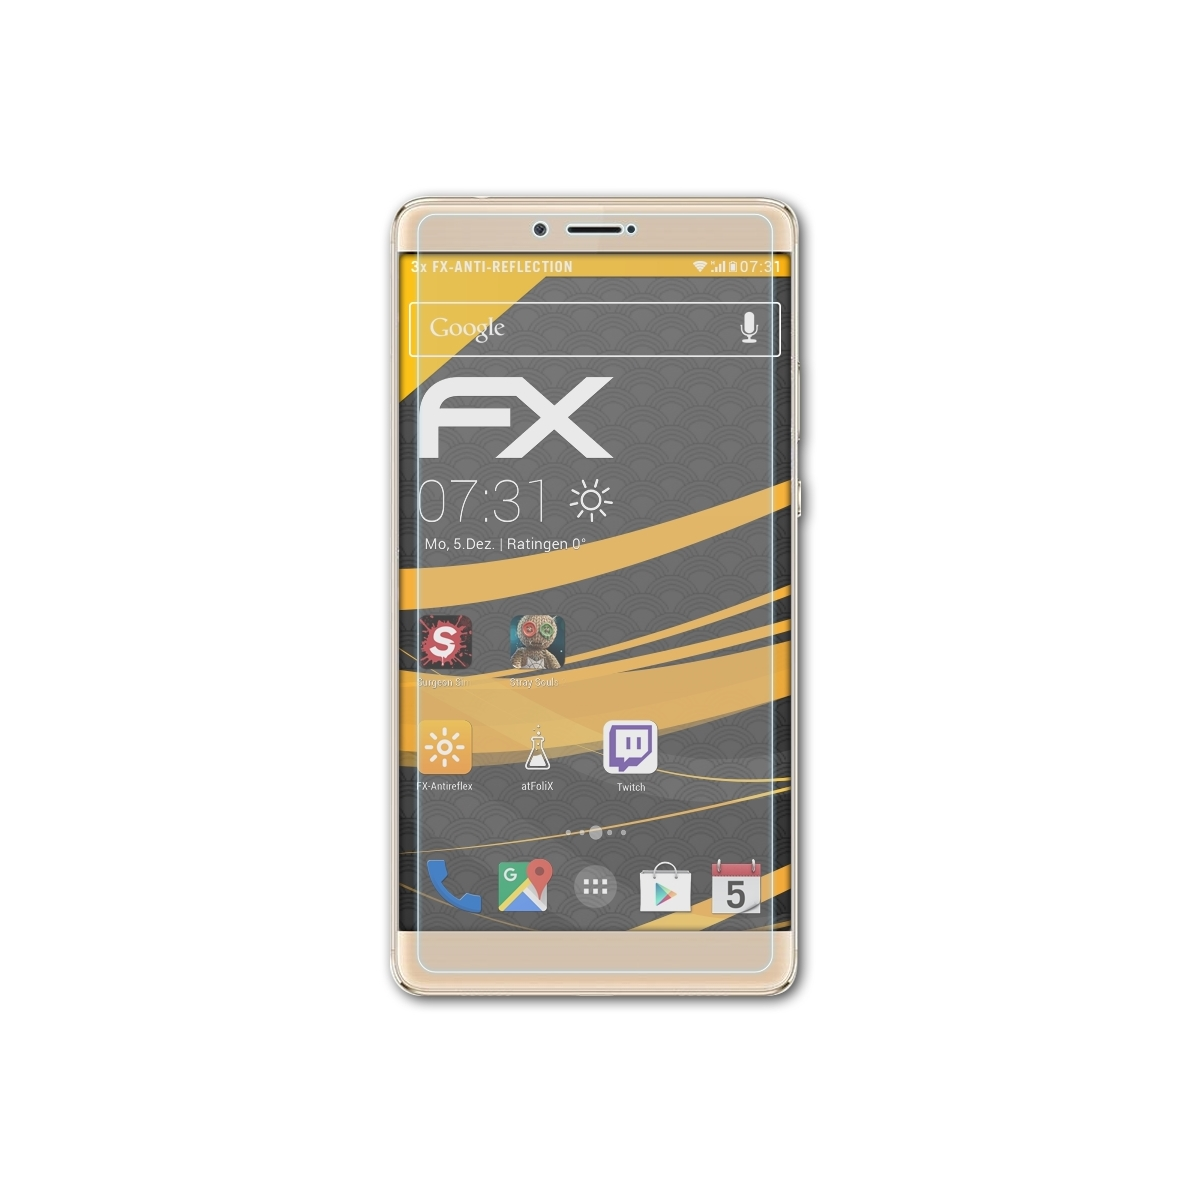 ATFOLIX 3x Honor 8) Note FX-Antireflex Huawei Displayschutz(für